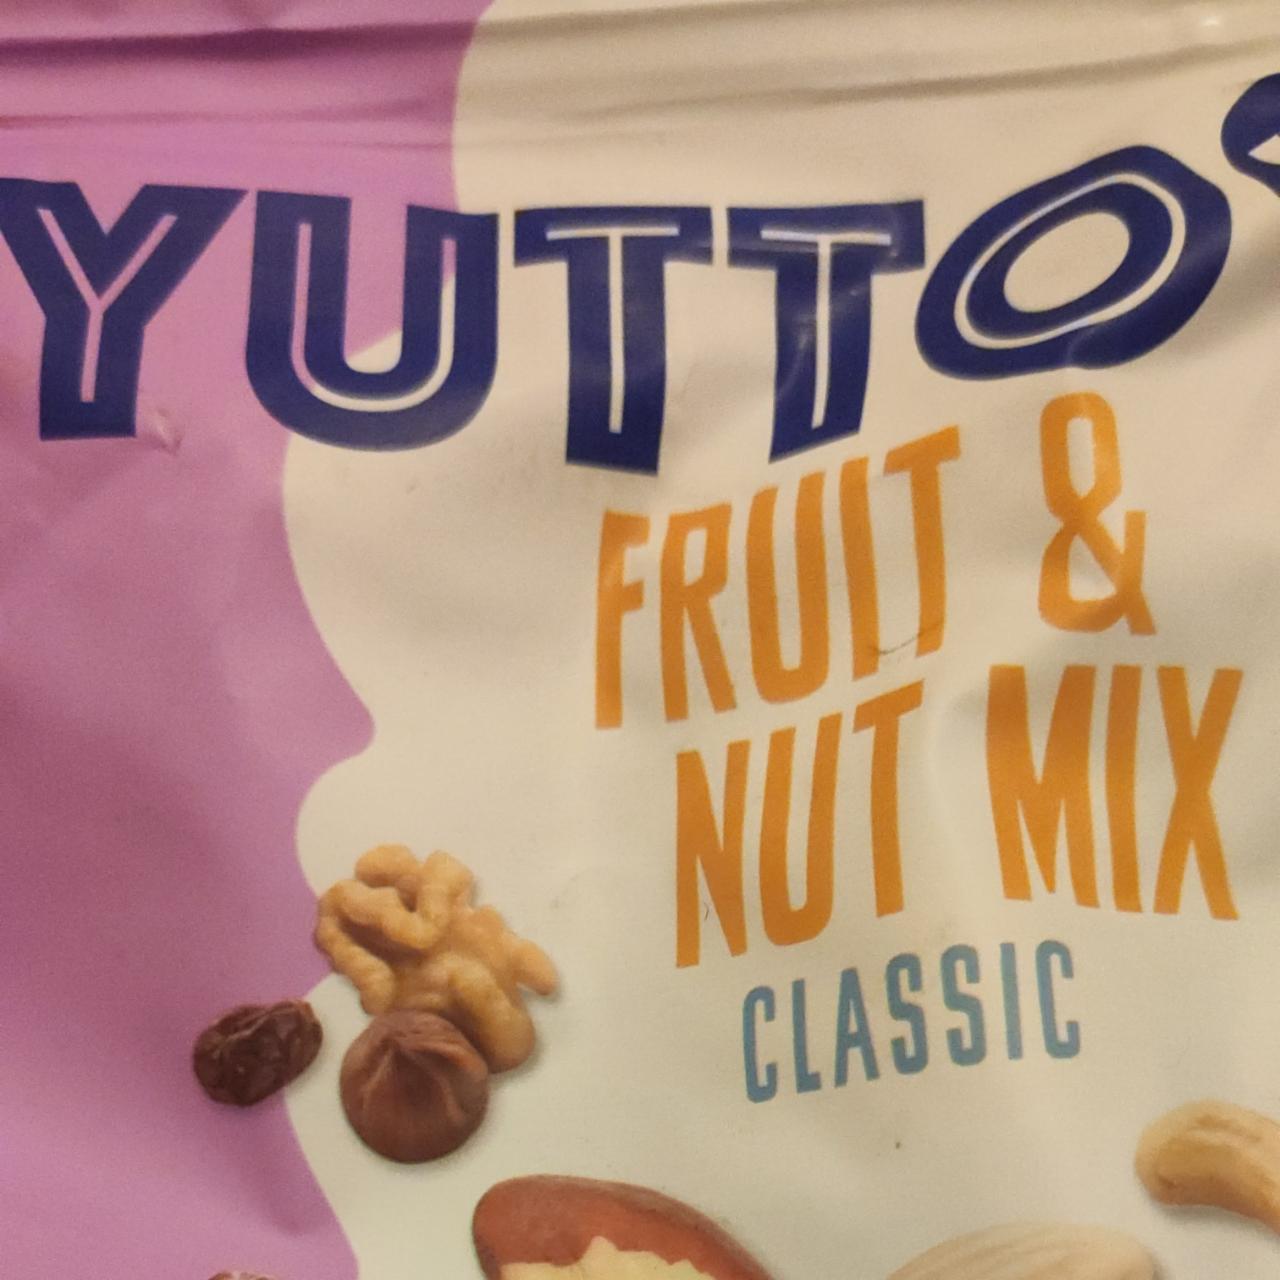 Fotografie - Fruit & Nut MIX Classic Yutto